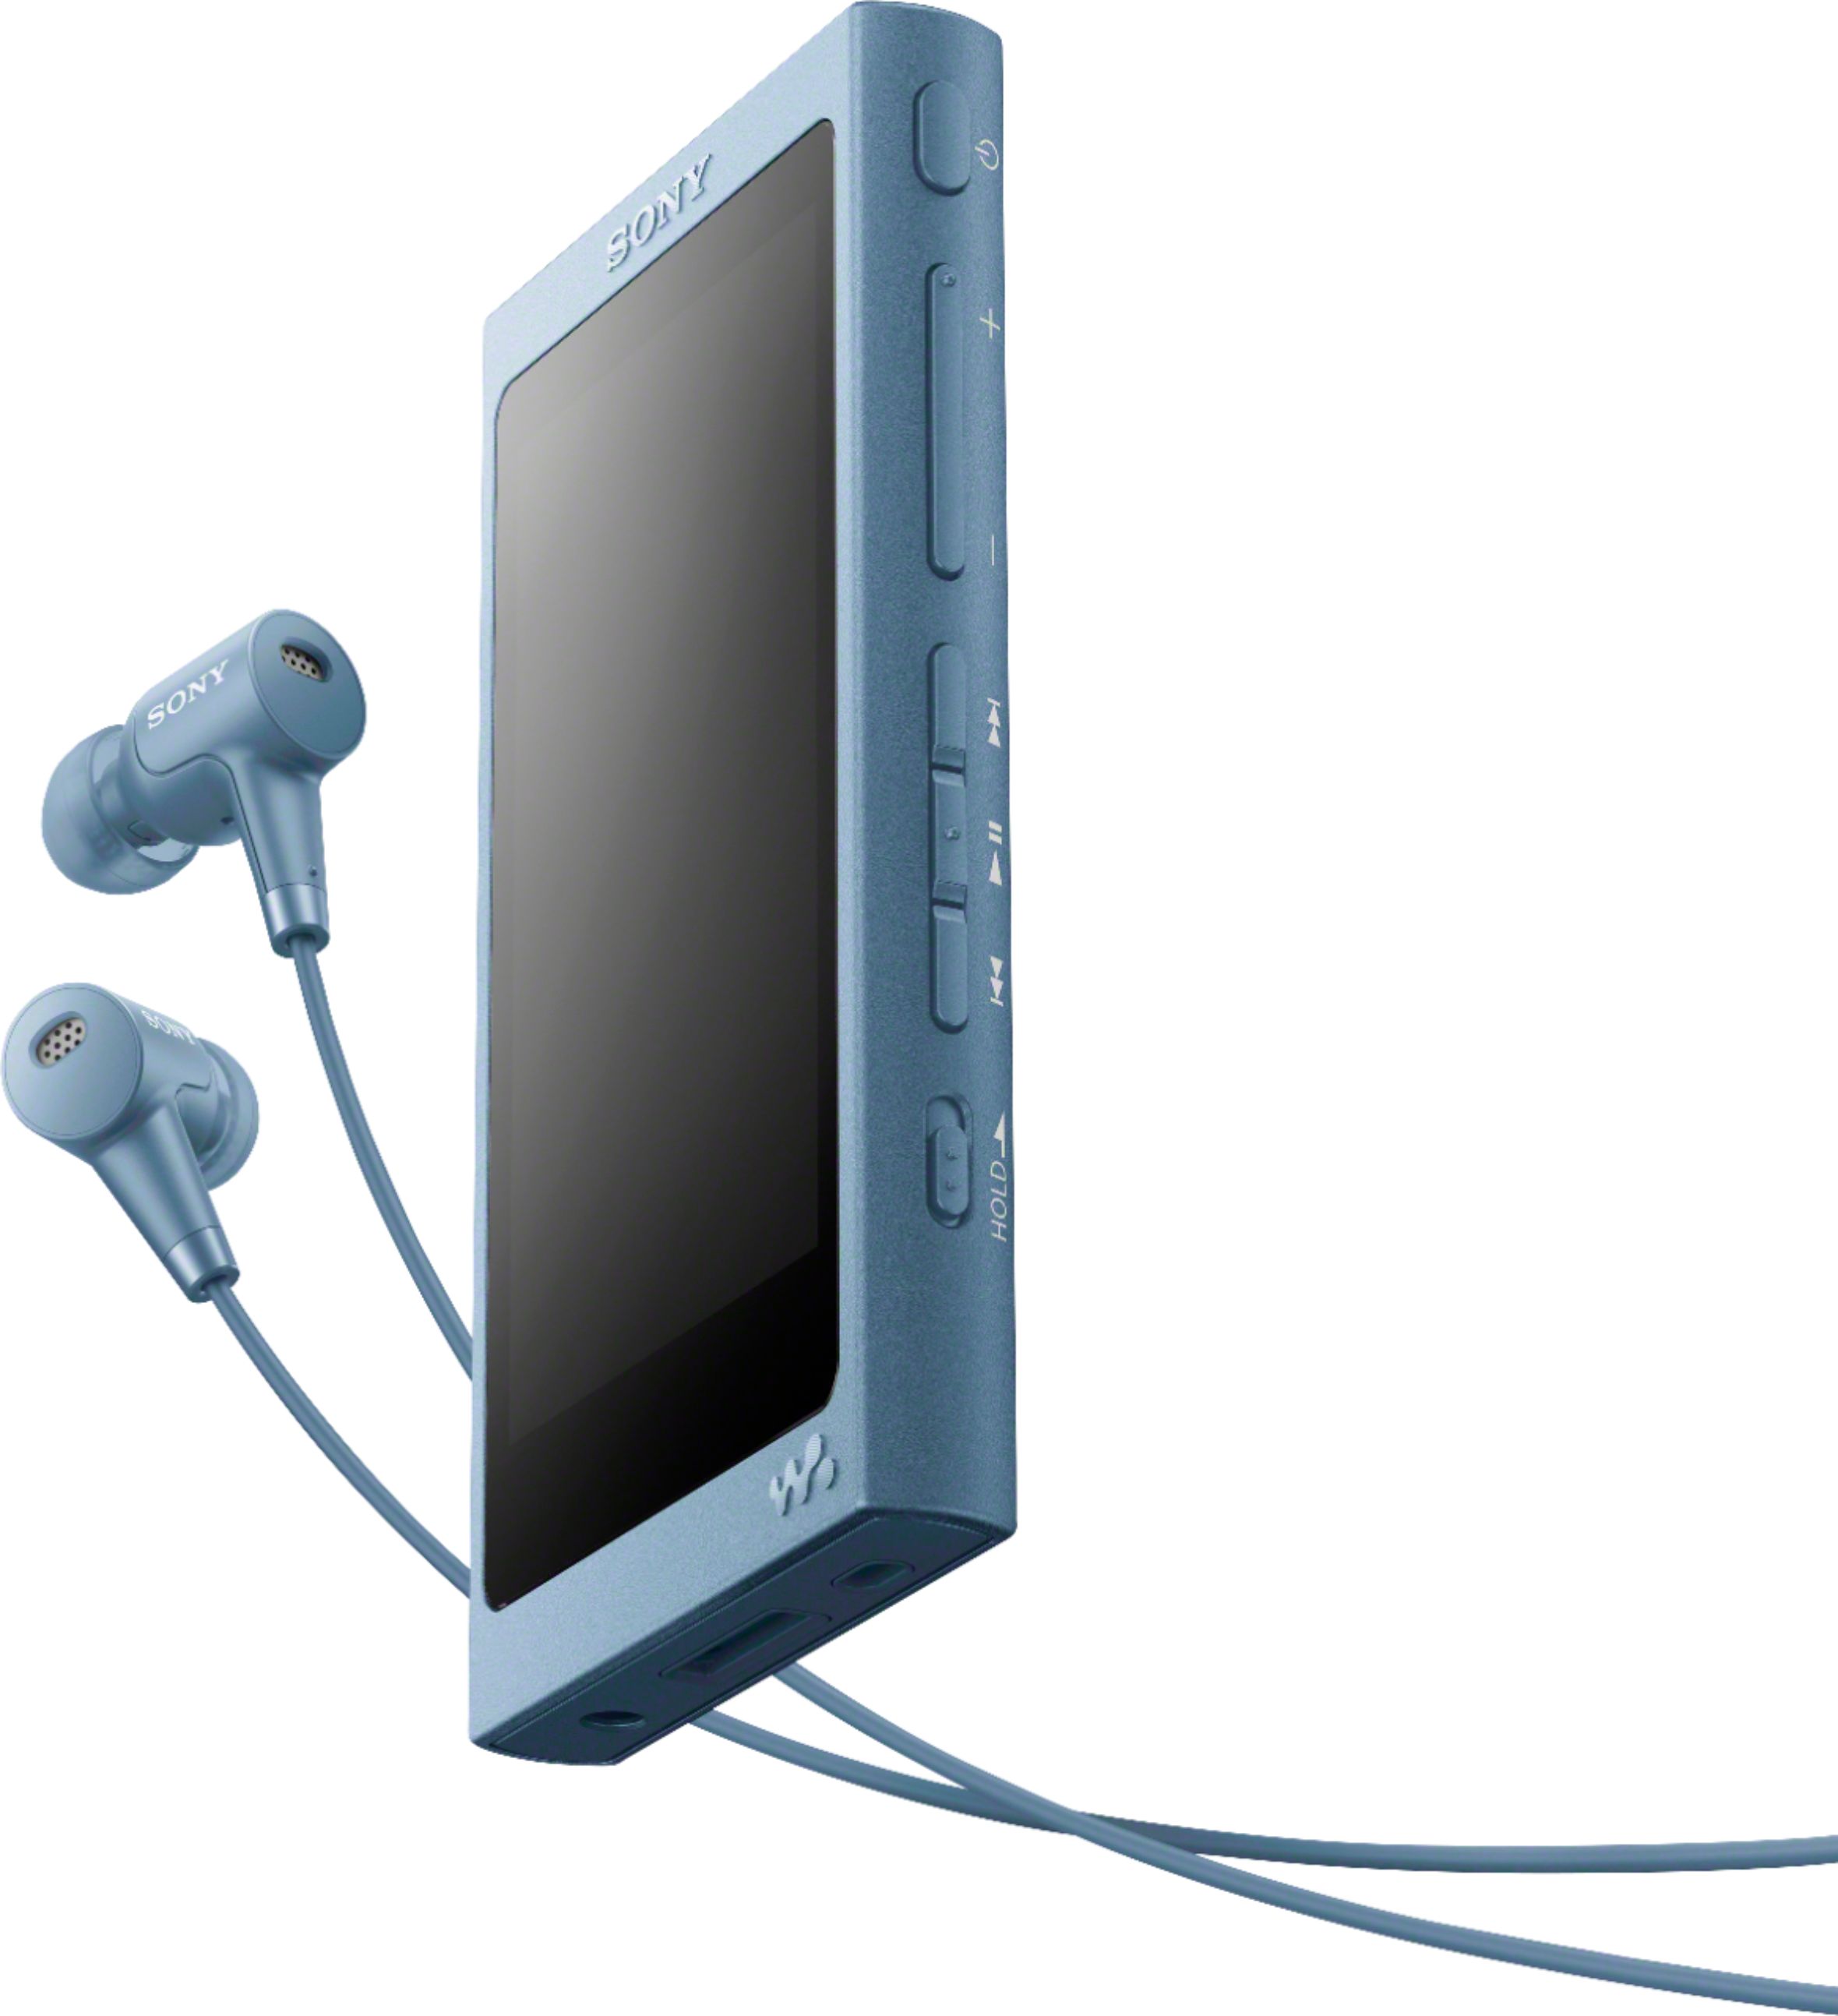 オーディオ機器 ポータブルプレーヤー Best Buy: Sony Walkman Hi-Res NW-A45 16GB* MP3 Player Moonlight 